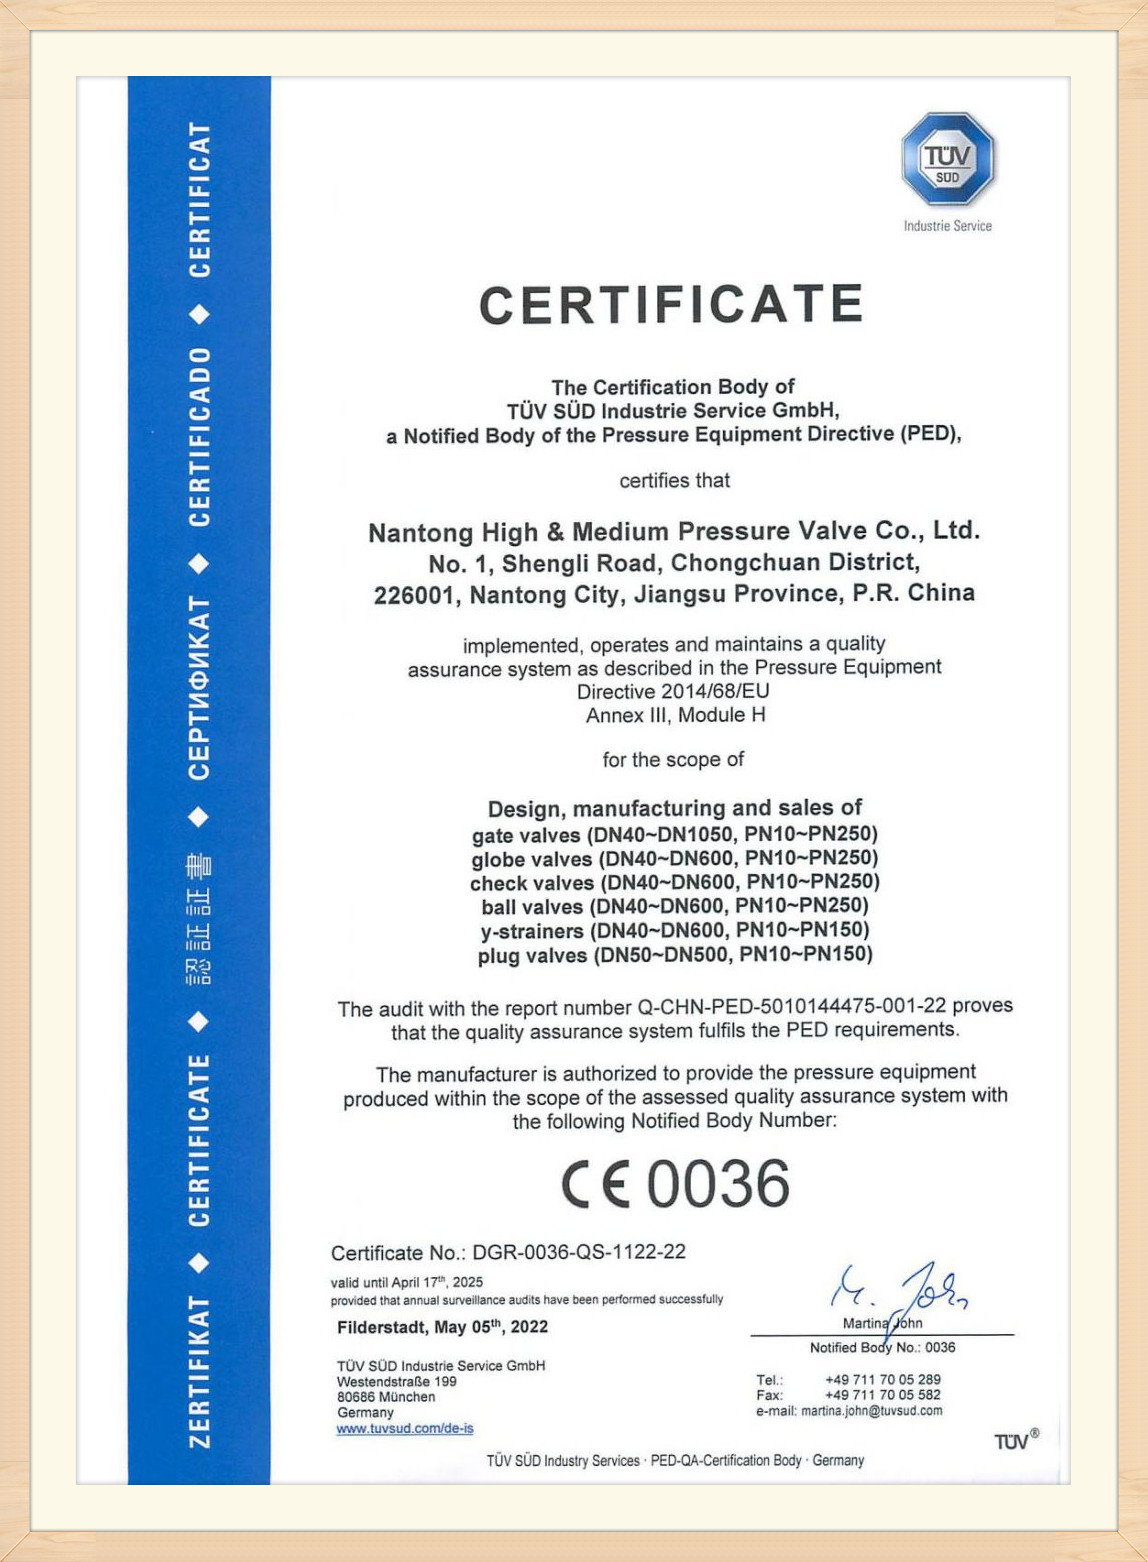 Nantong Hoch- und Mitteldruckventil Co., Ltd.